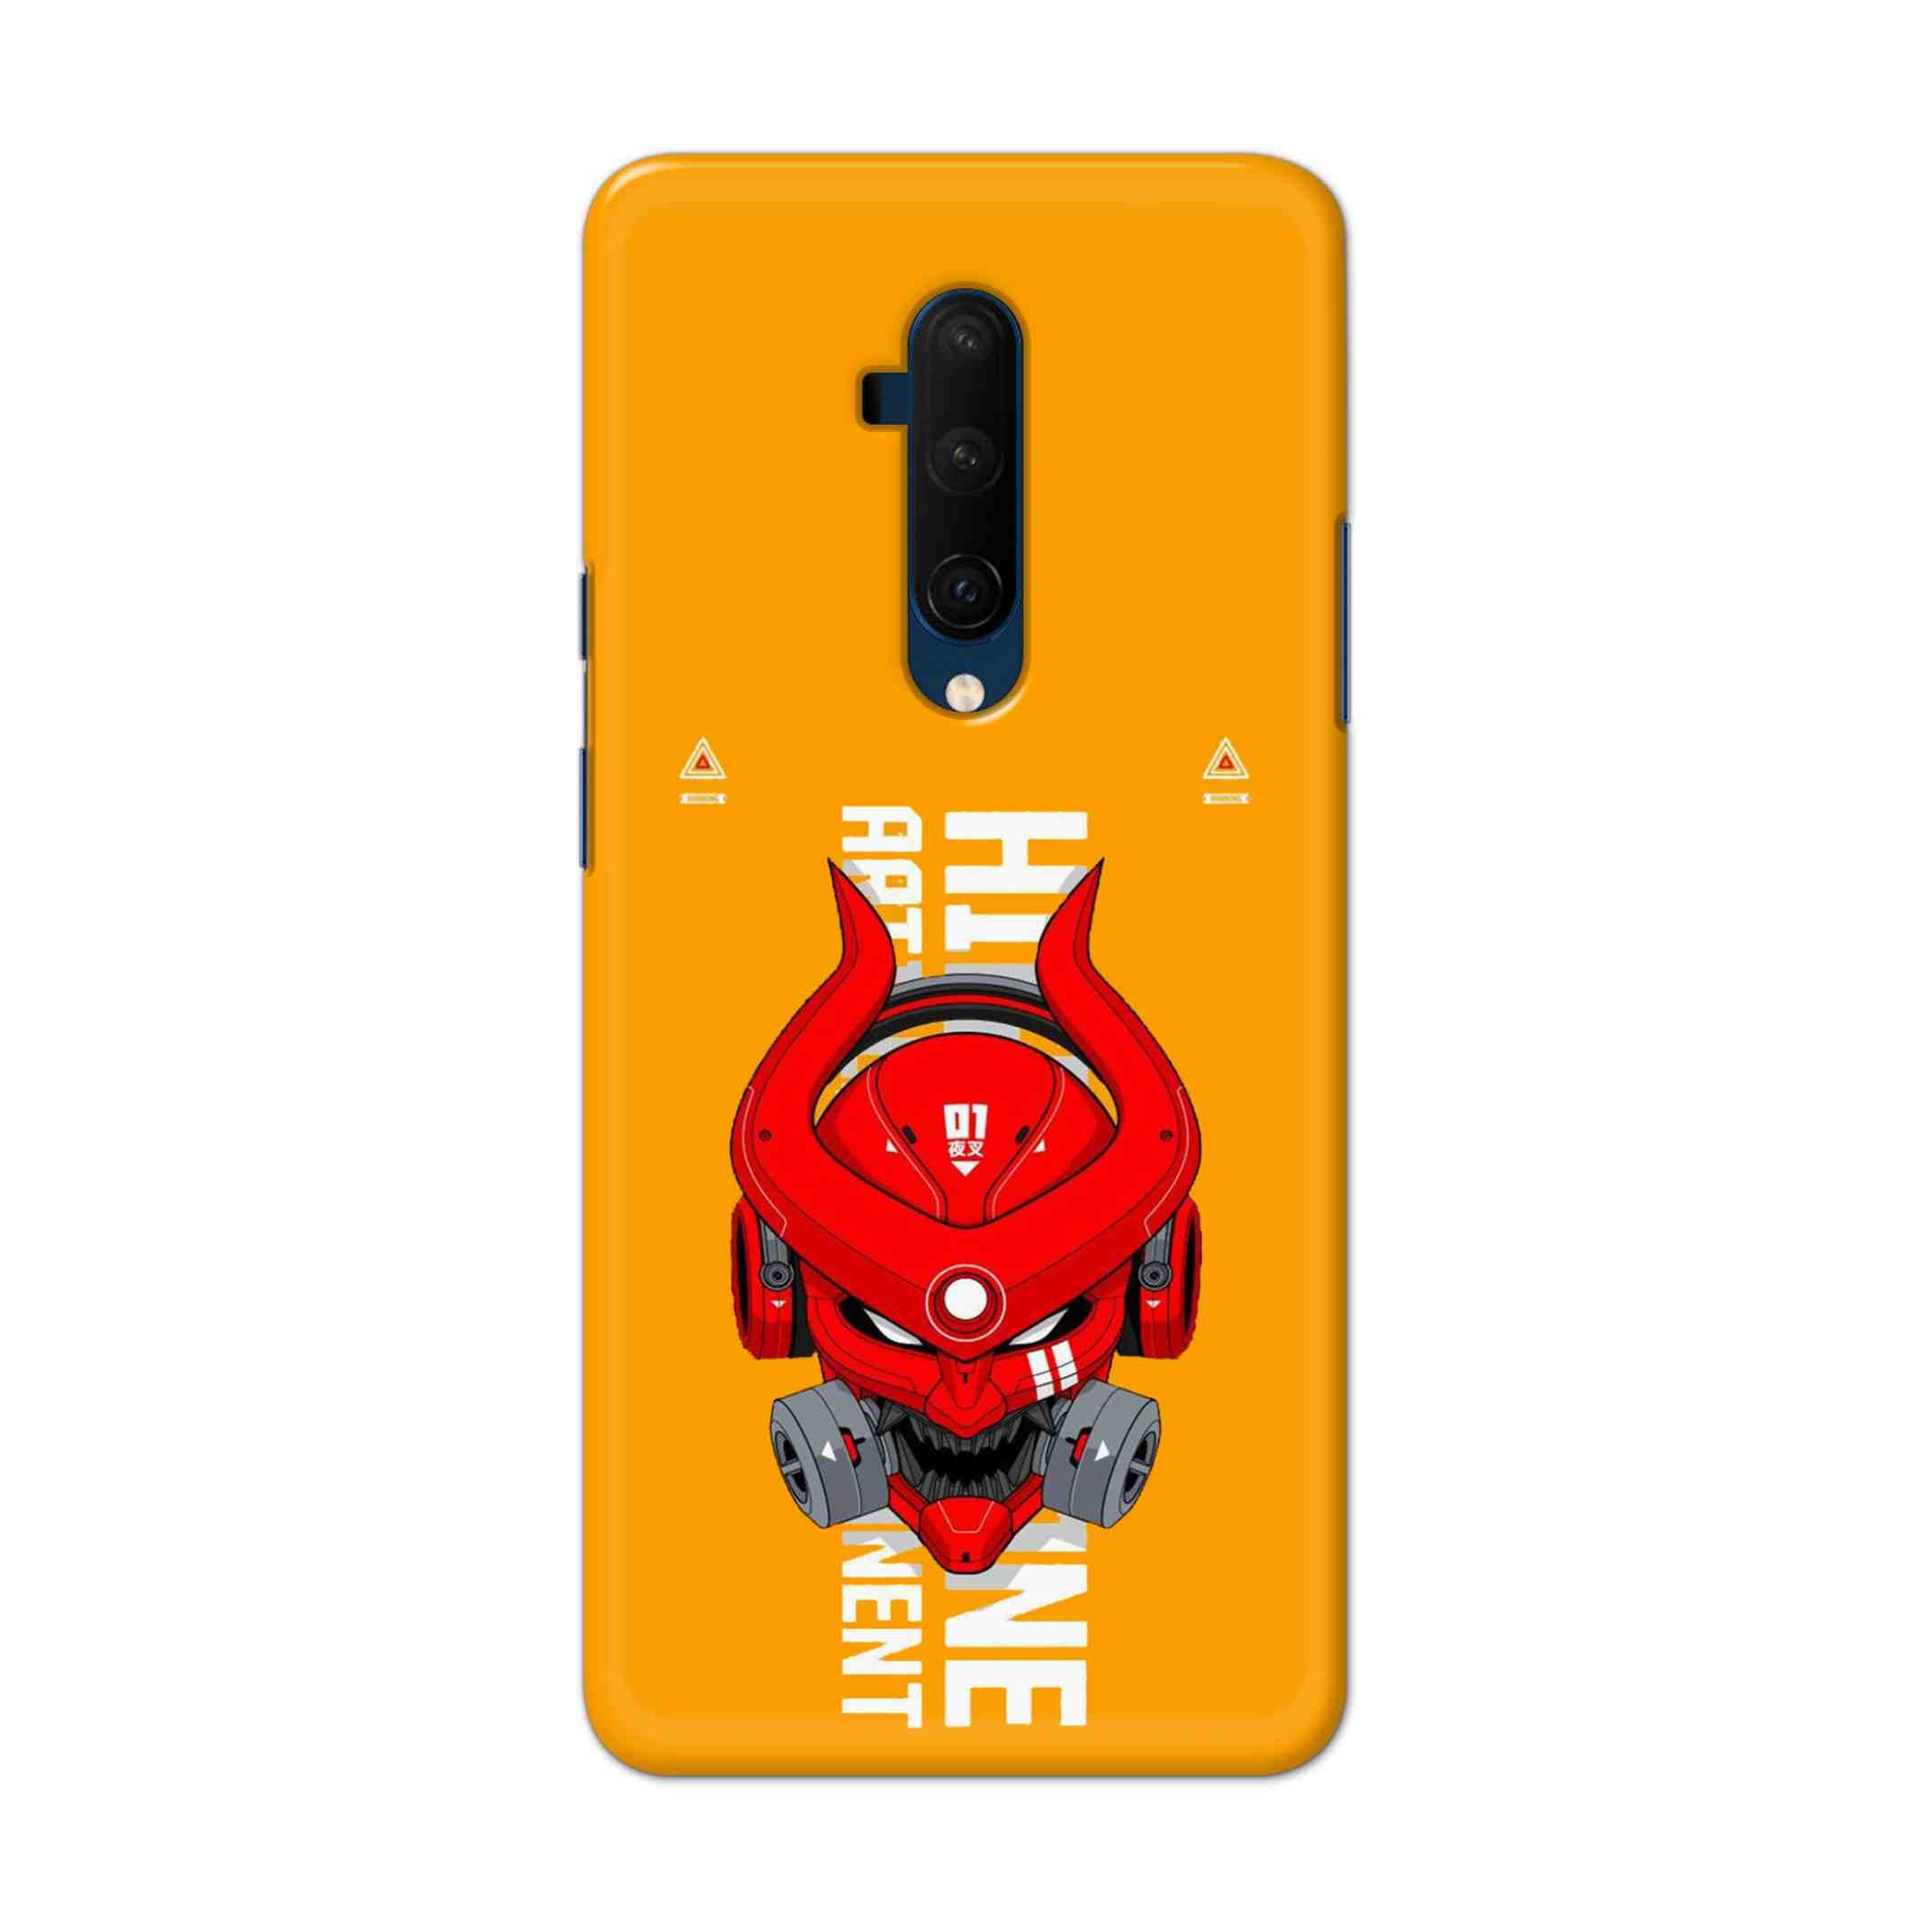 Buy Bull Skull Hard Back Mobile Phone Case Cover For OnePlus 7T Pro Online